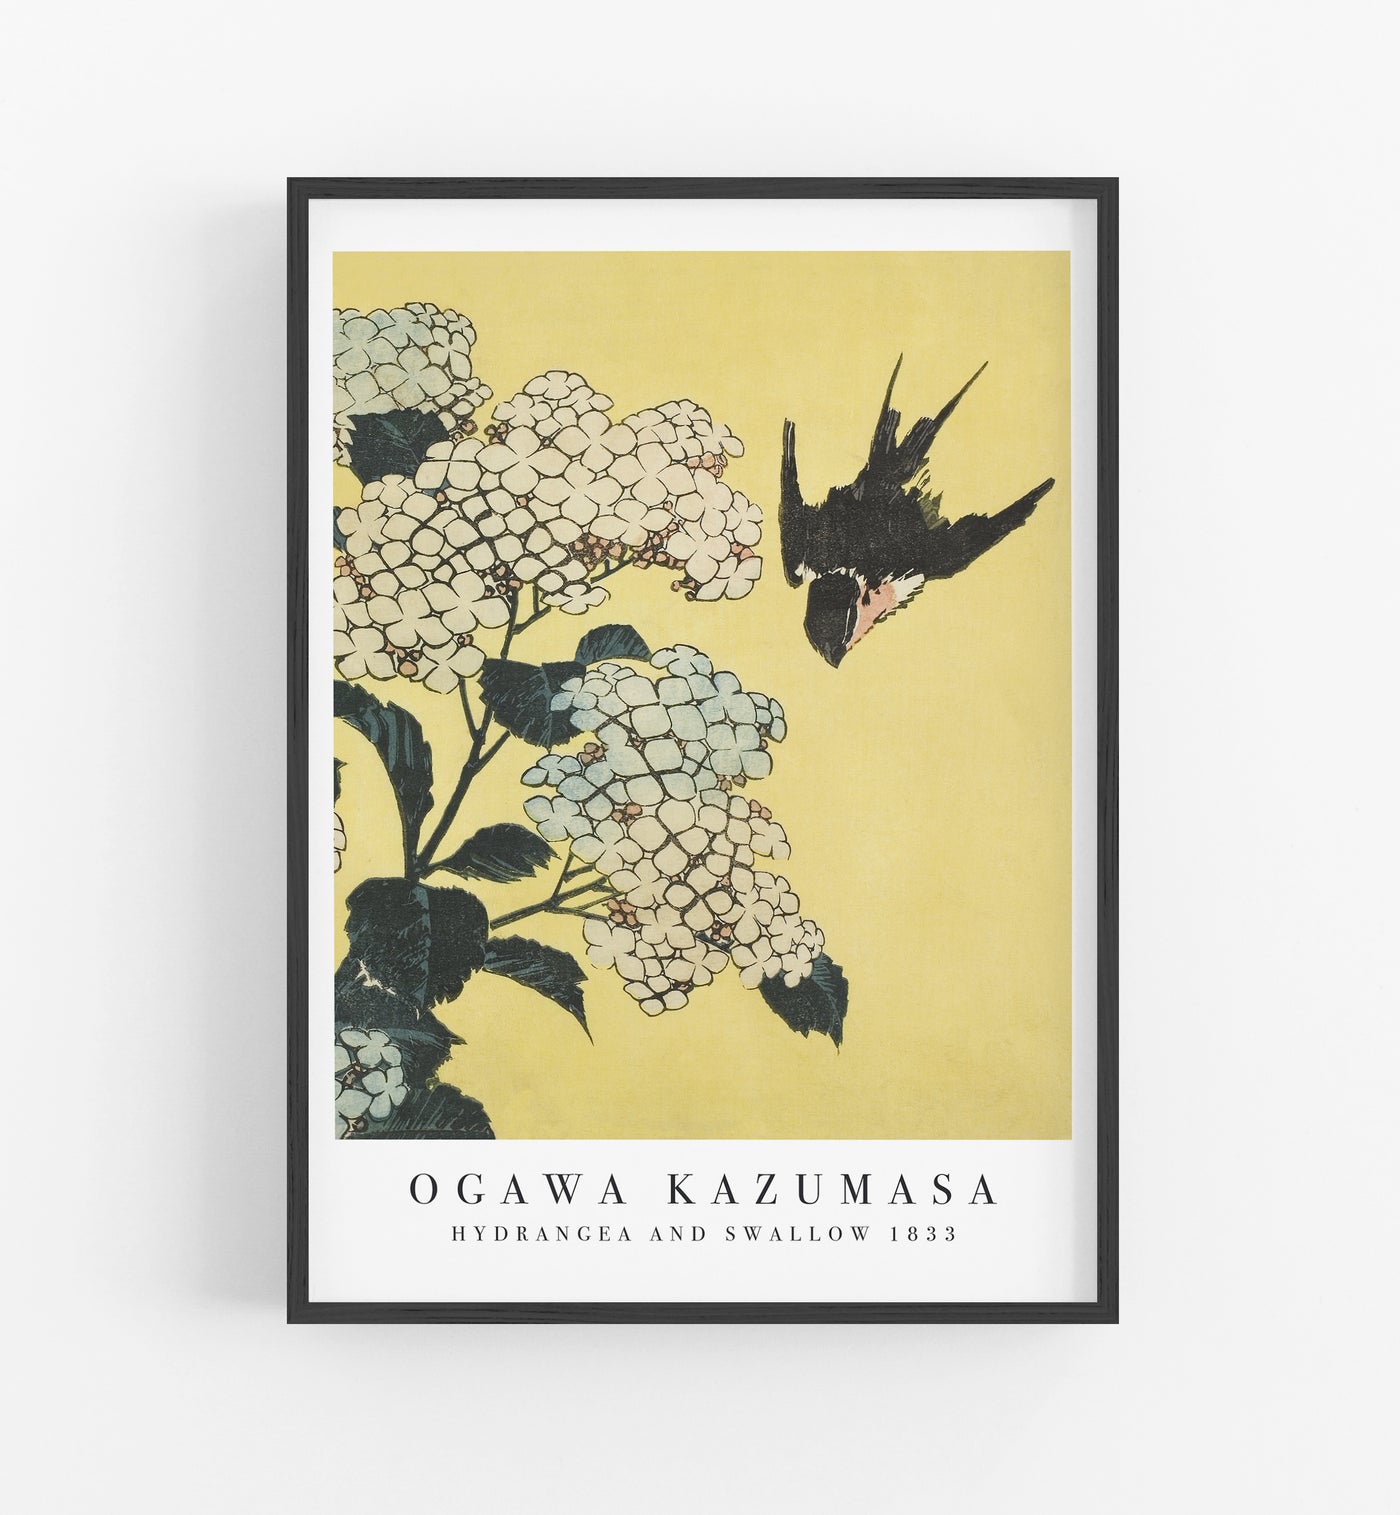 Kazumasa Hydrangea and Swallow